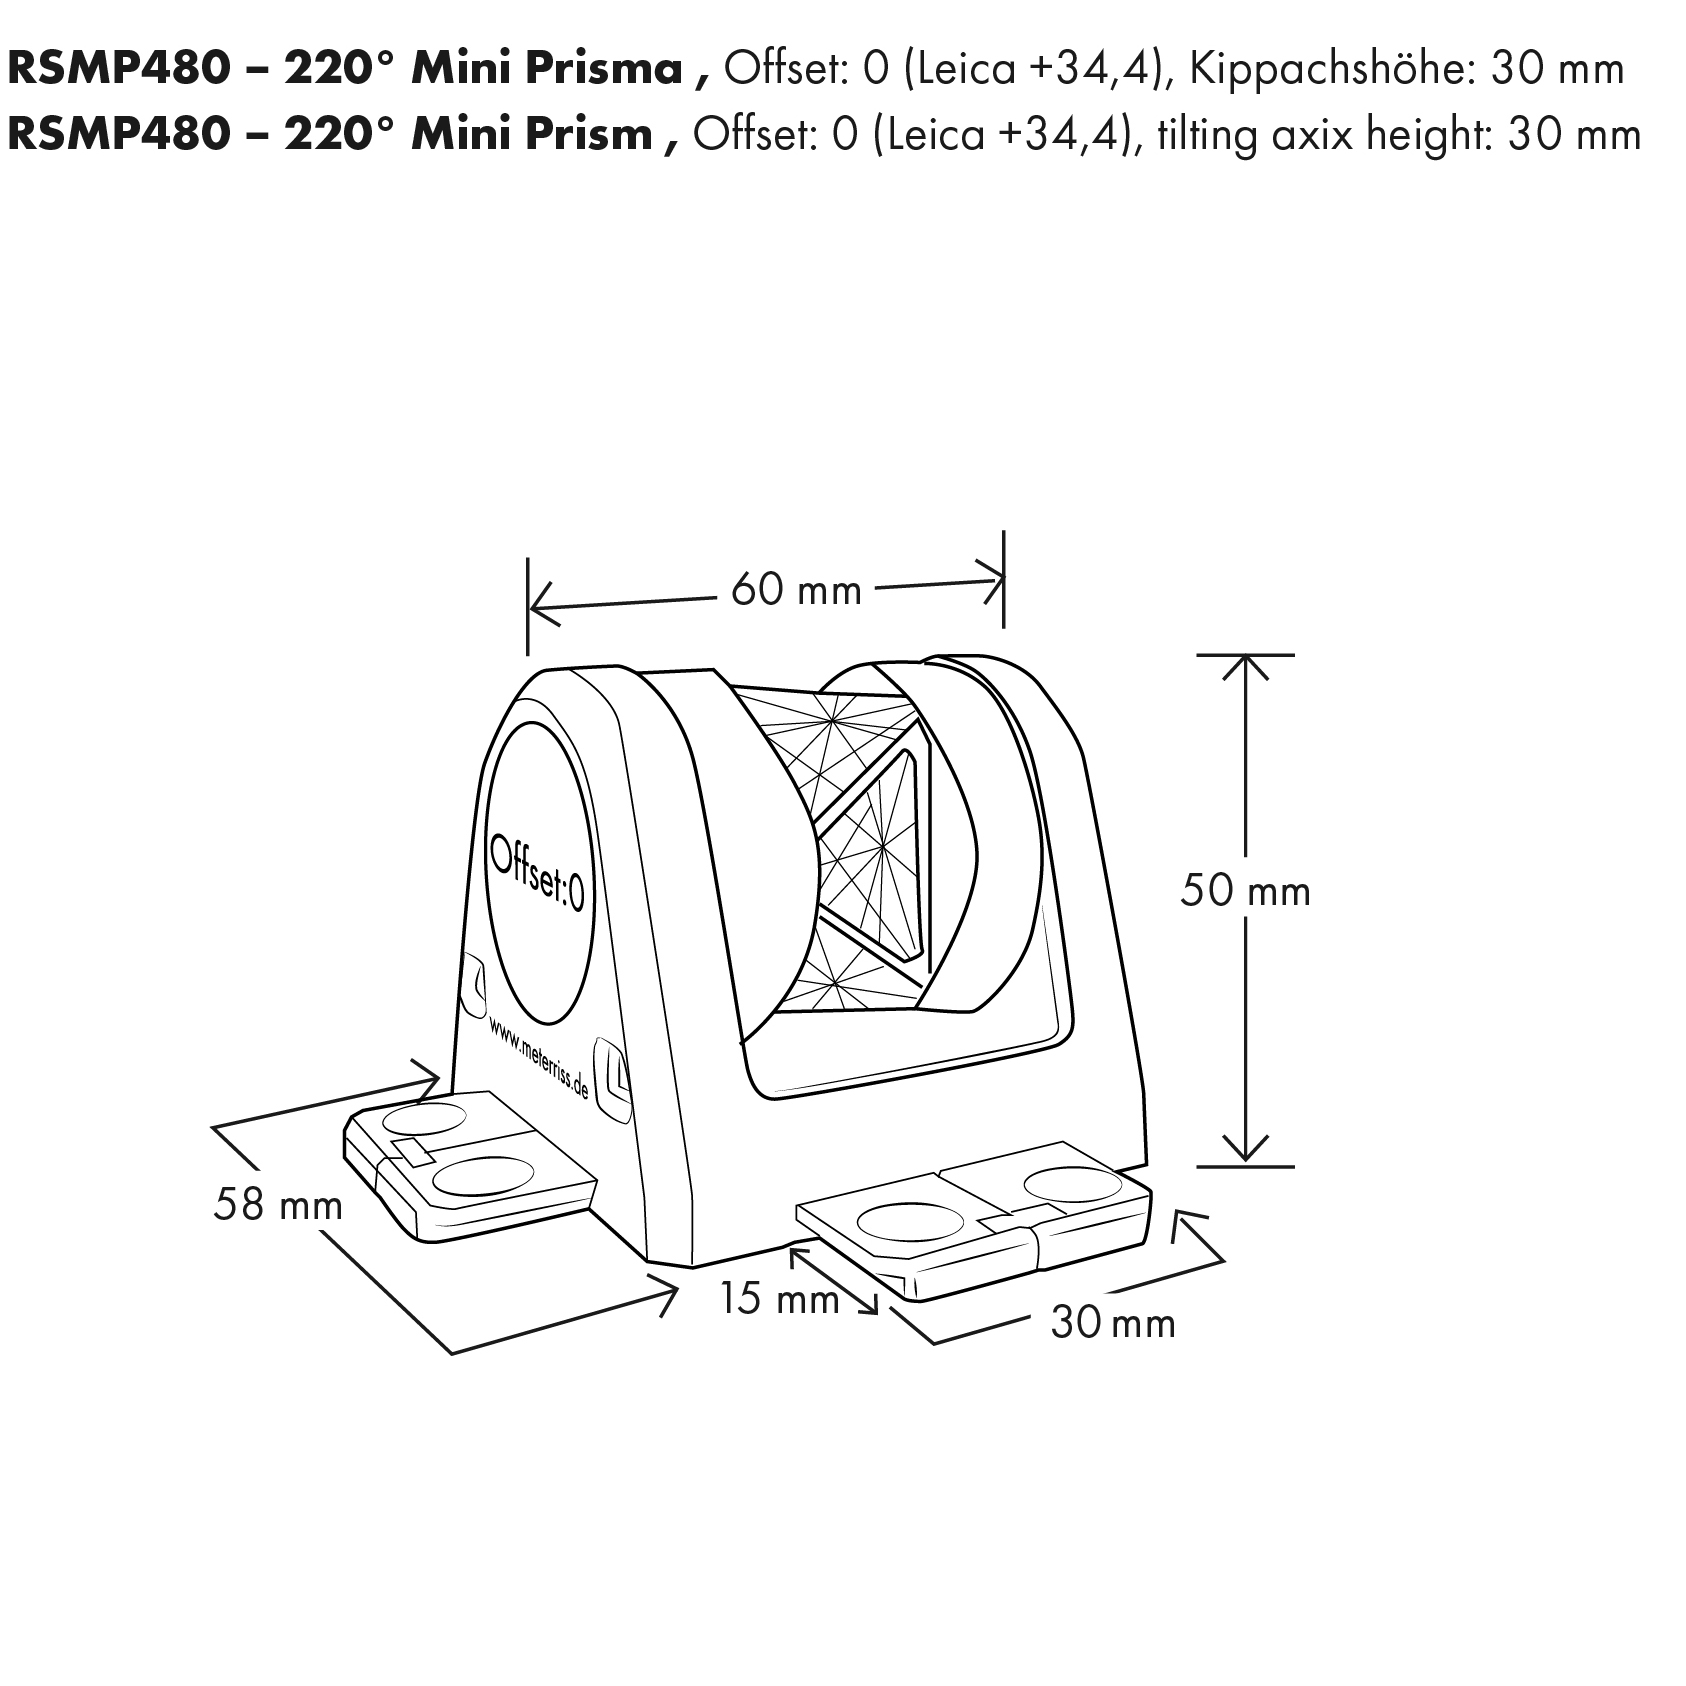 RSMP480 - 220° Mini Prisma, kupferbeschichtet, von Rothbucher Systeme